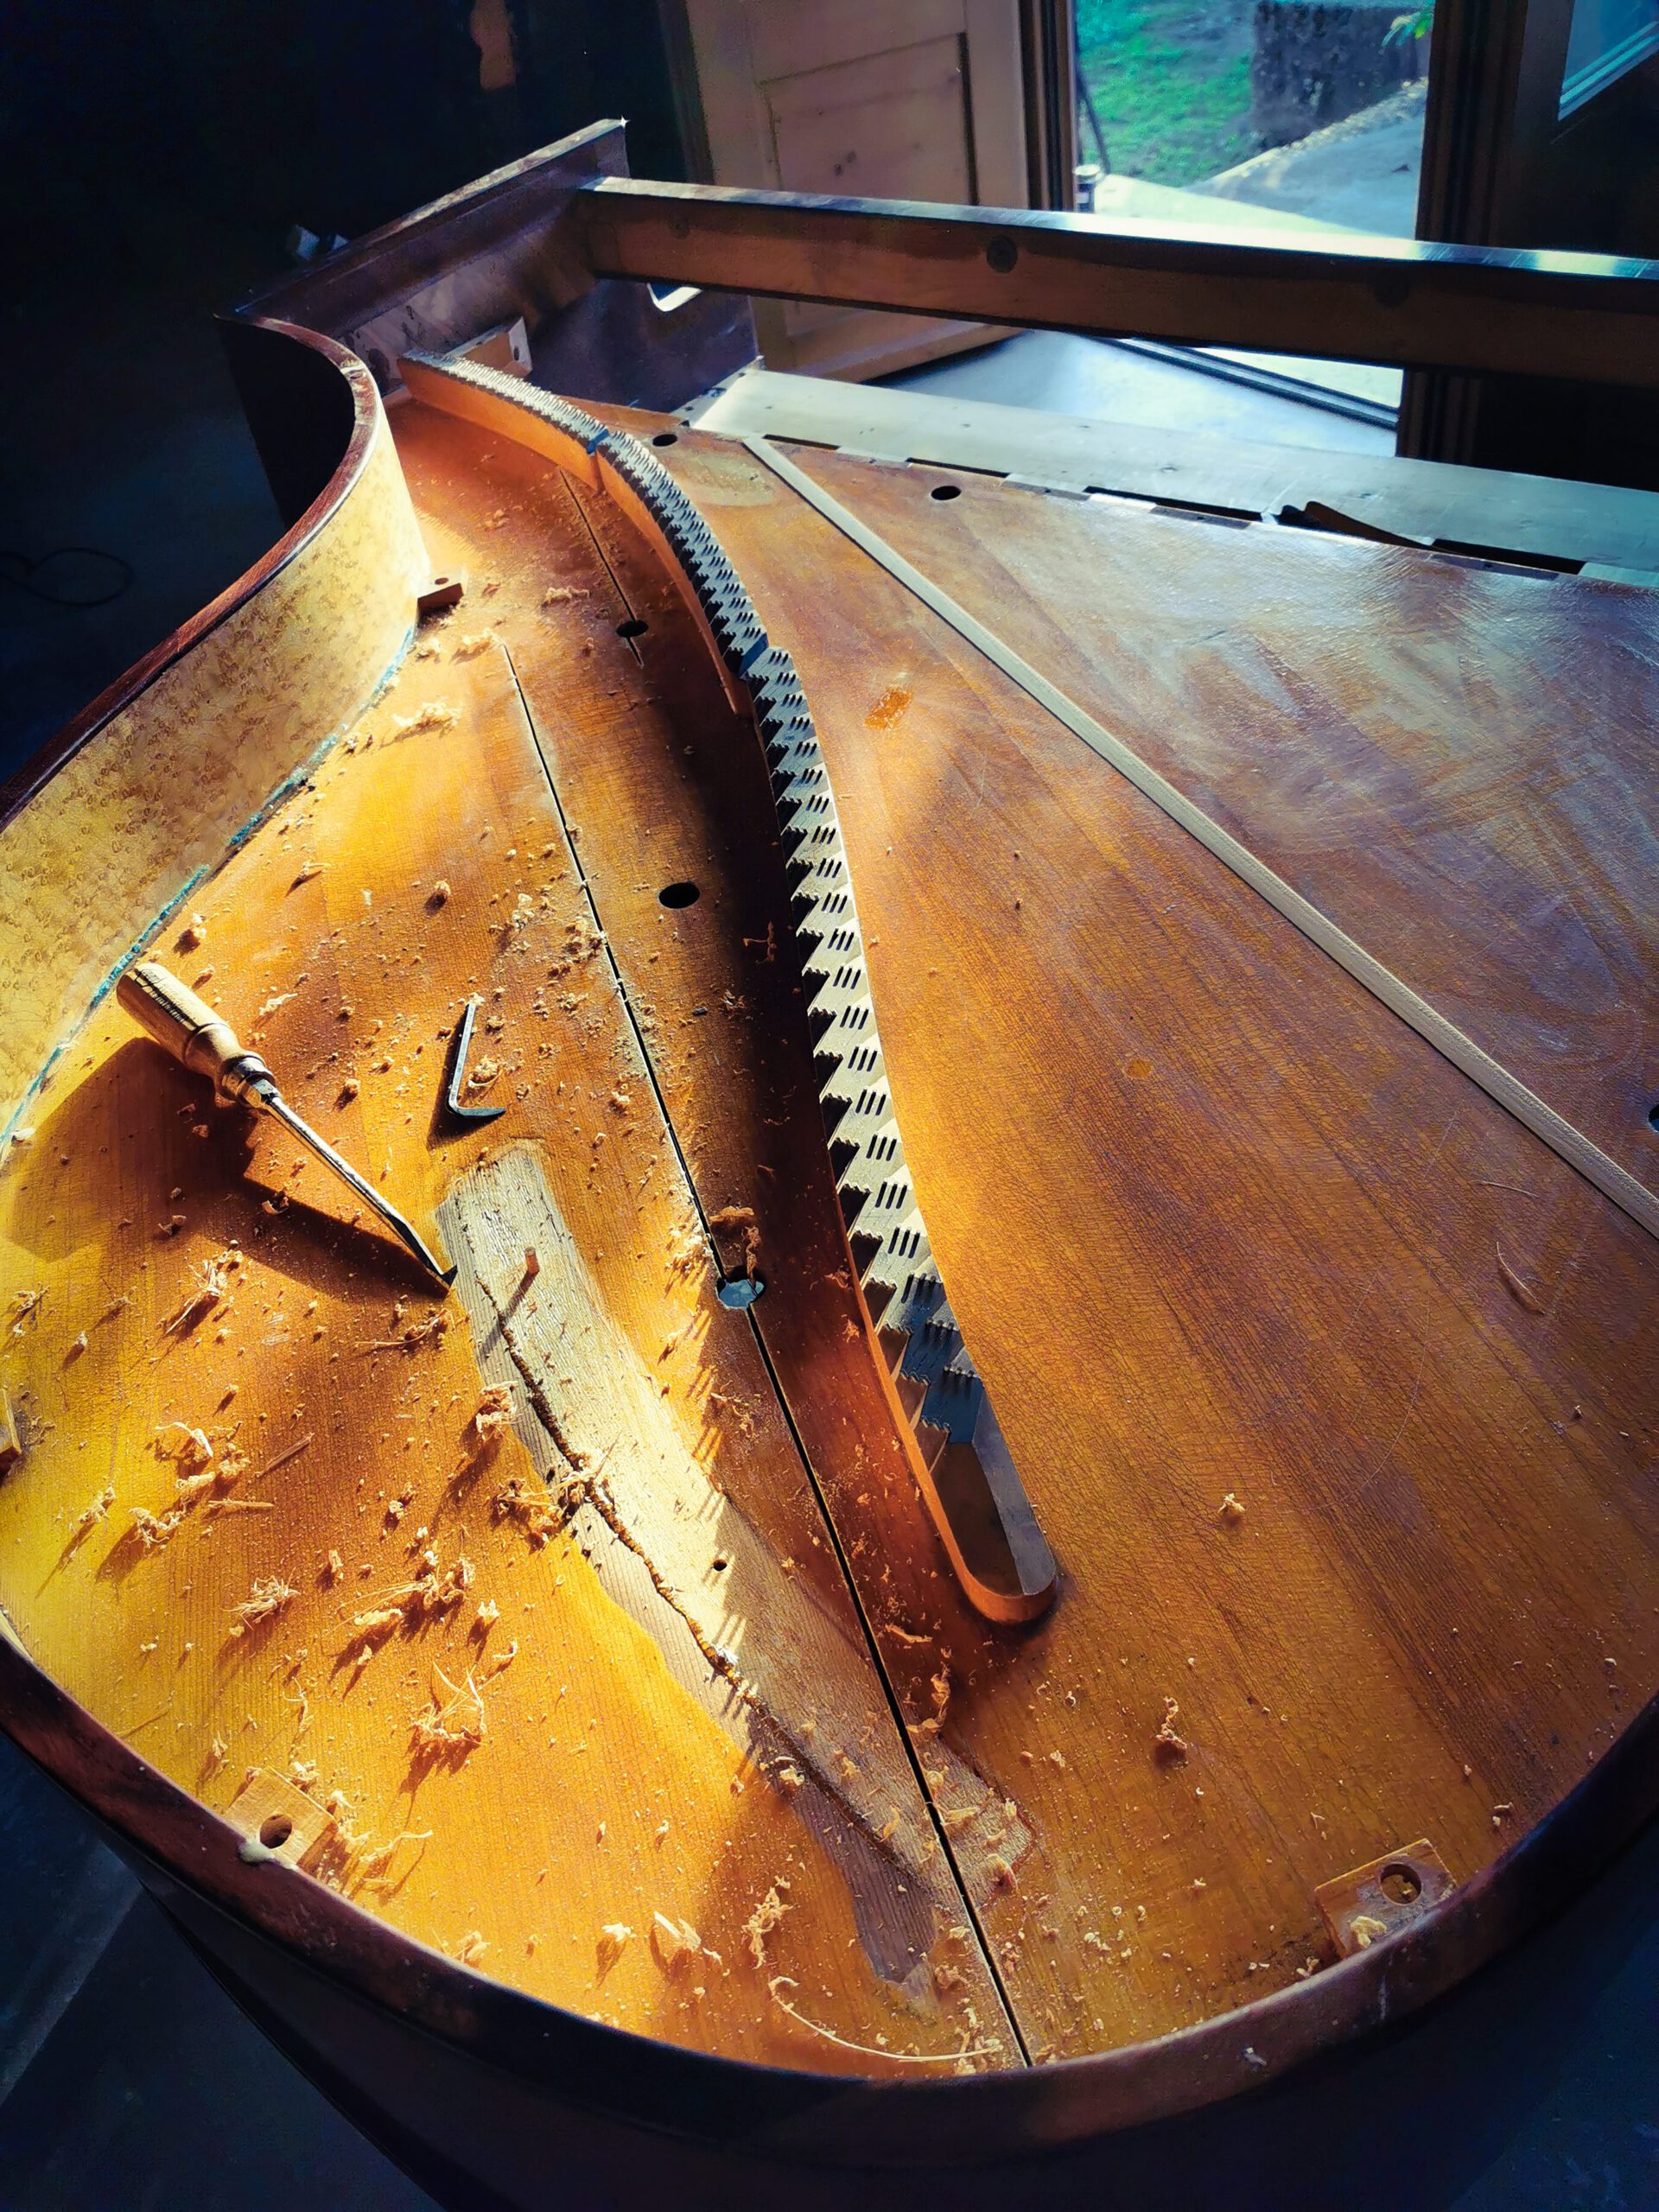 restauration piano quart de queue Kriegelstein "Bijou" de 1914 dans l'atelier de restauration de piano de Marion Lainé en Savoie